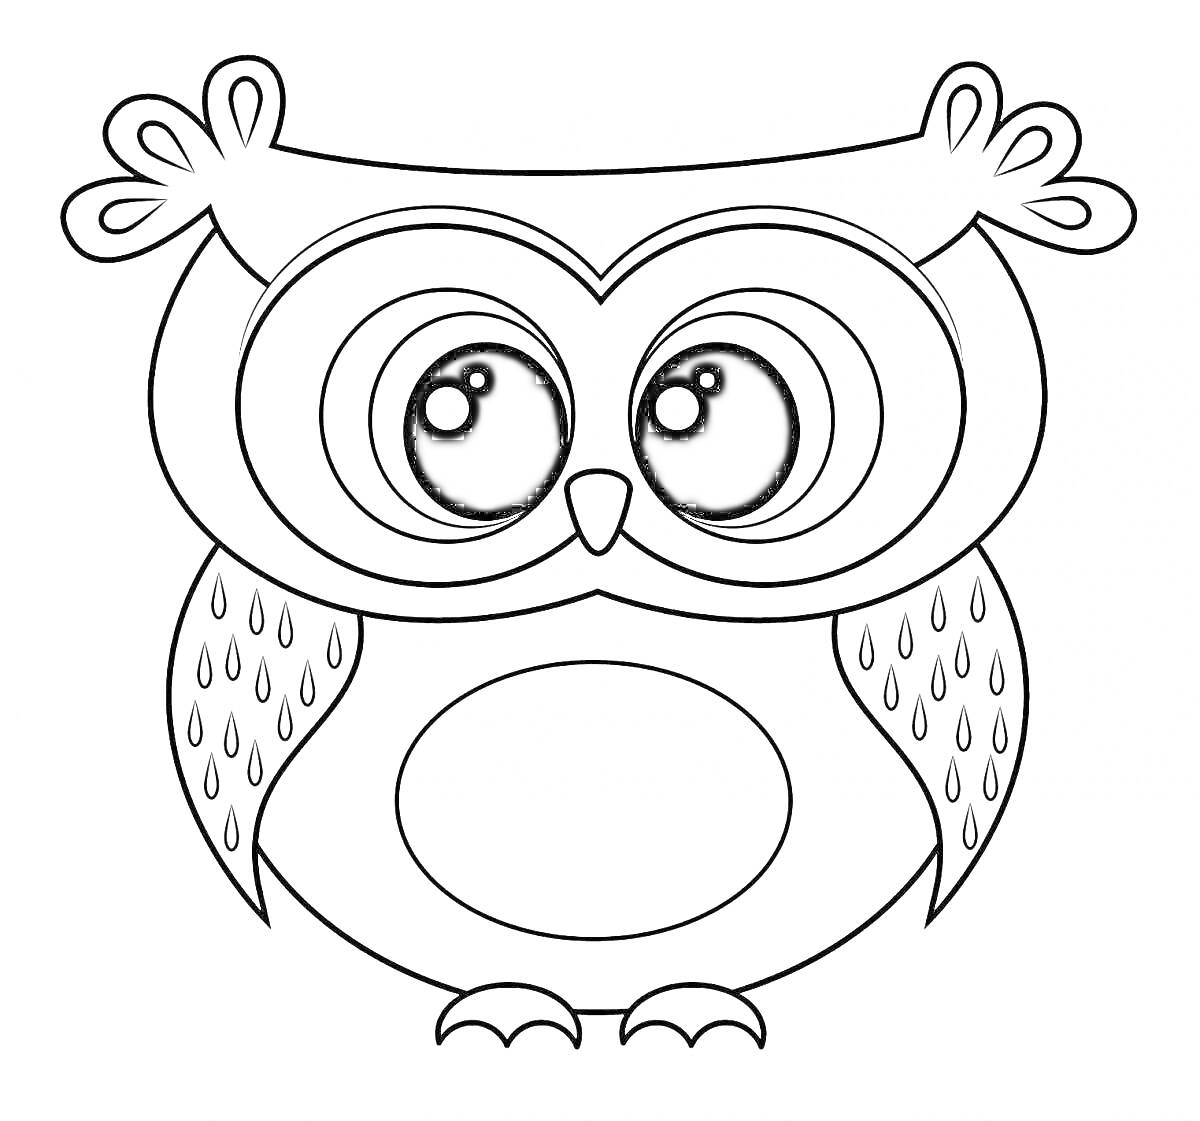 Раскраска Раскраска - Сова с большими глазами и перьями на крыльцах, для детей